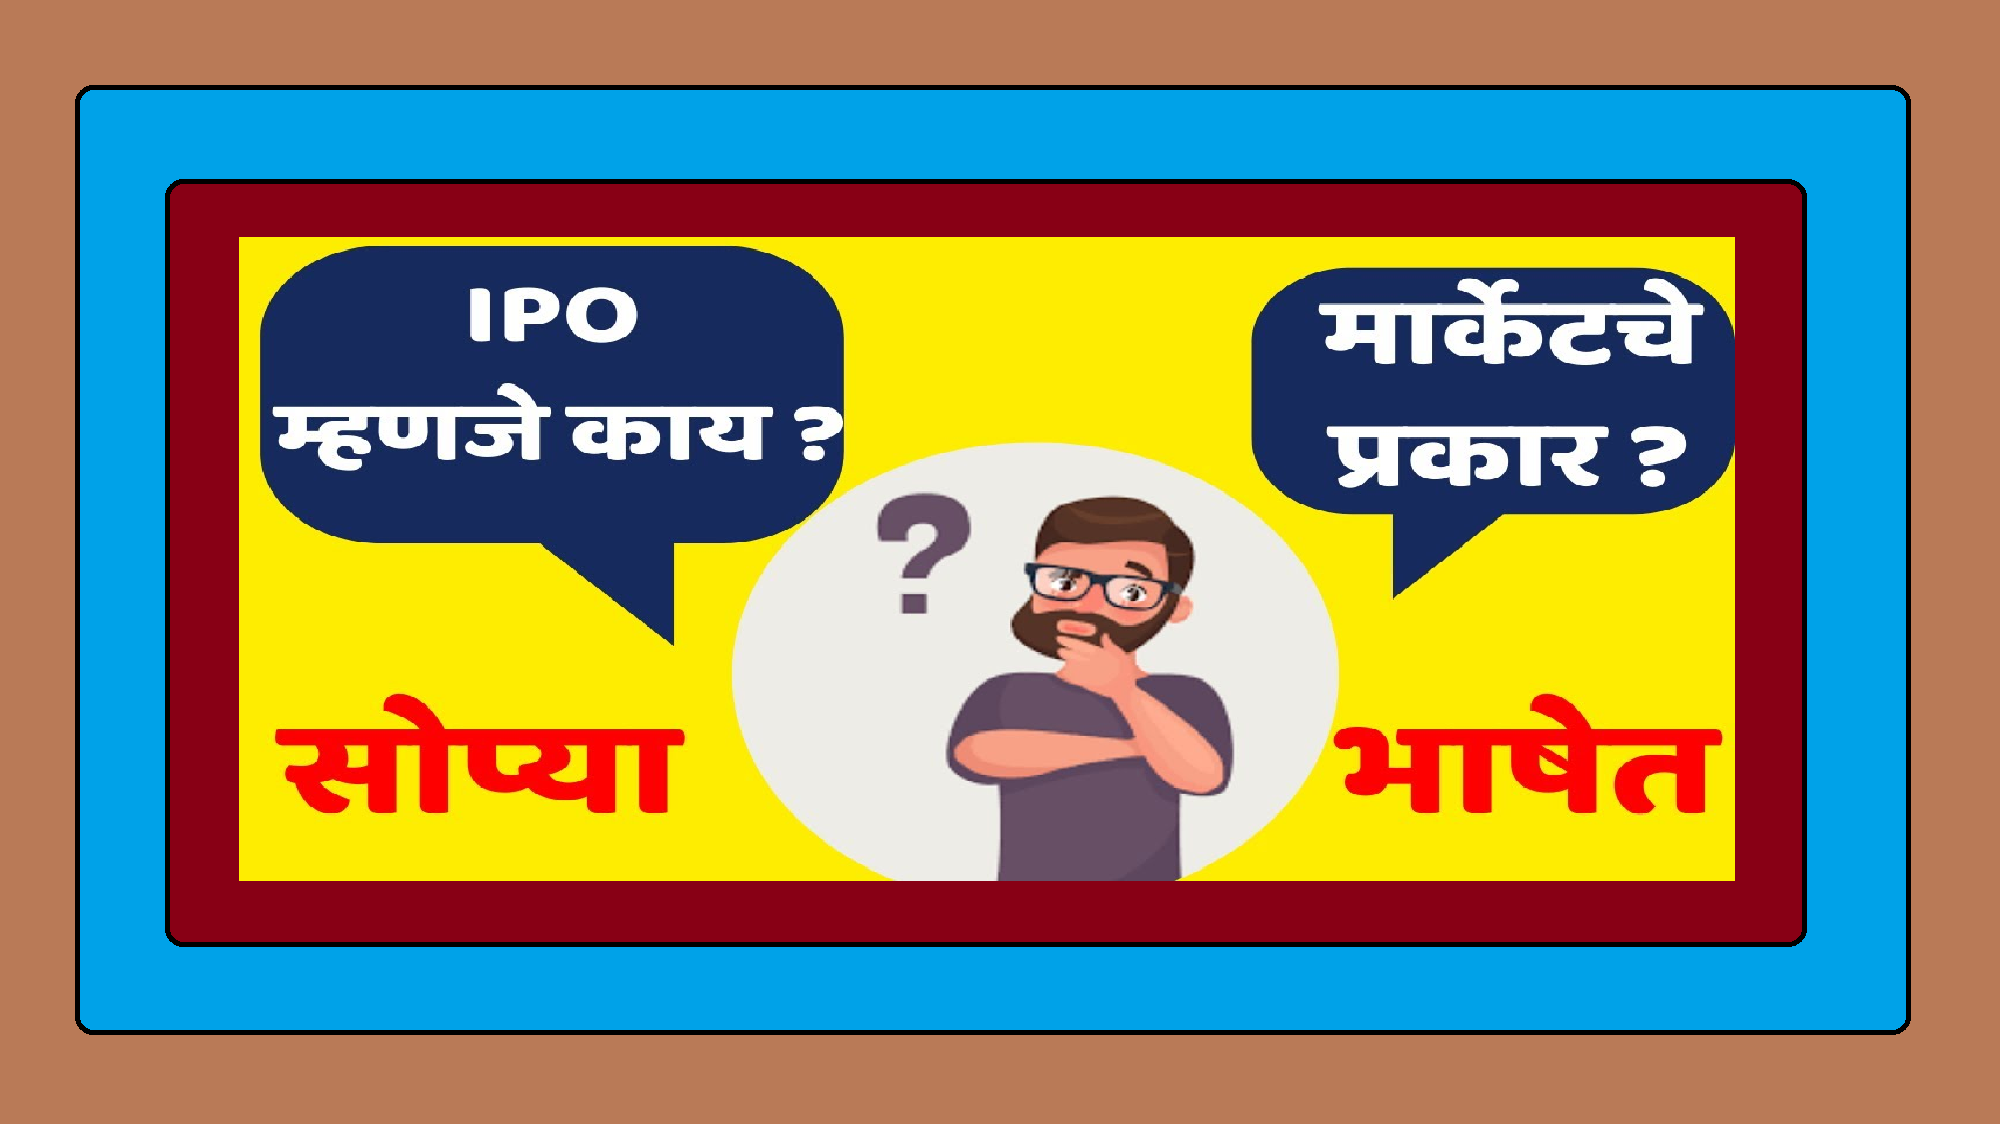 शेअर मार्केट मधील आयपीओ (IPO) म्हणजे काय?।। IPO मध्ये गुंतवणूक करावी का? याबद्दल महत्वपूर्ण माहिती जाणून घ्या अतिशय सोप्या भाषेत !